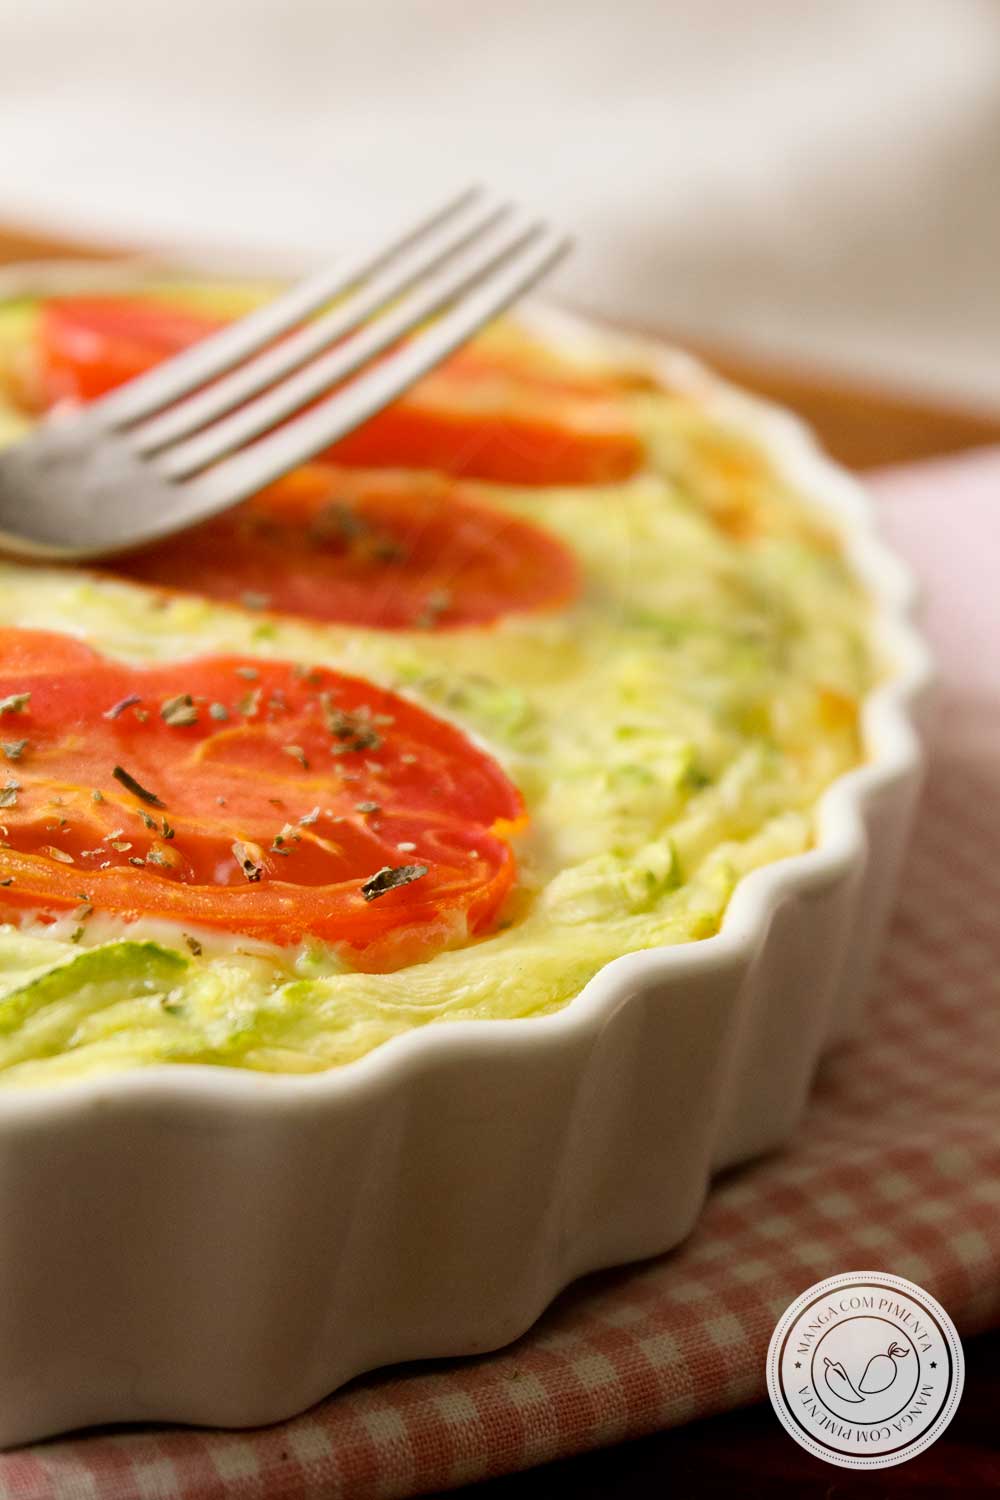 Receita de Quiche de Abobrinha e Tomate sem Massa - prepare um delicioso almoço na semana!